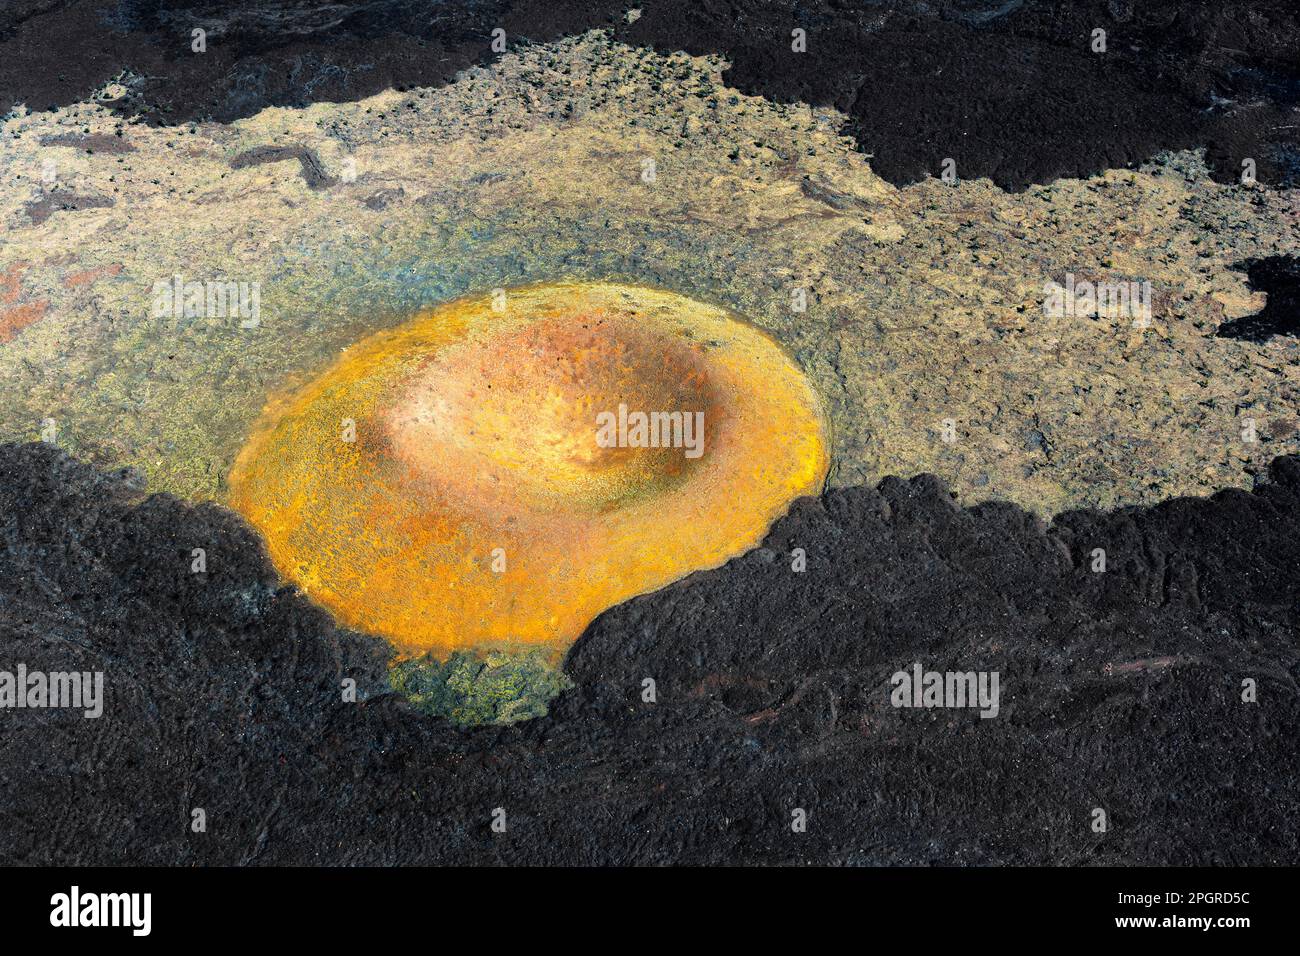 Vista aerea di un cratere vulcanico collassato con lava solidificata che crea intricate texture e forme. Foto Stock